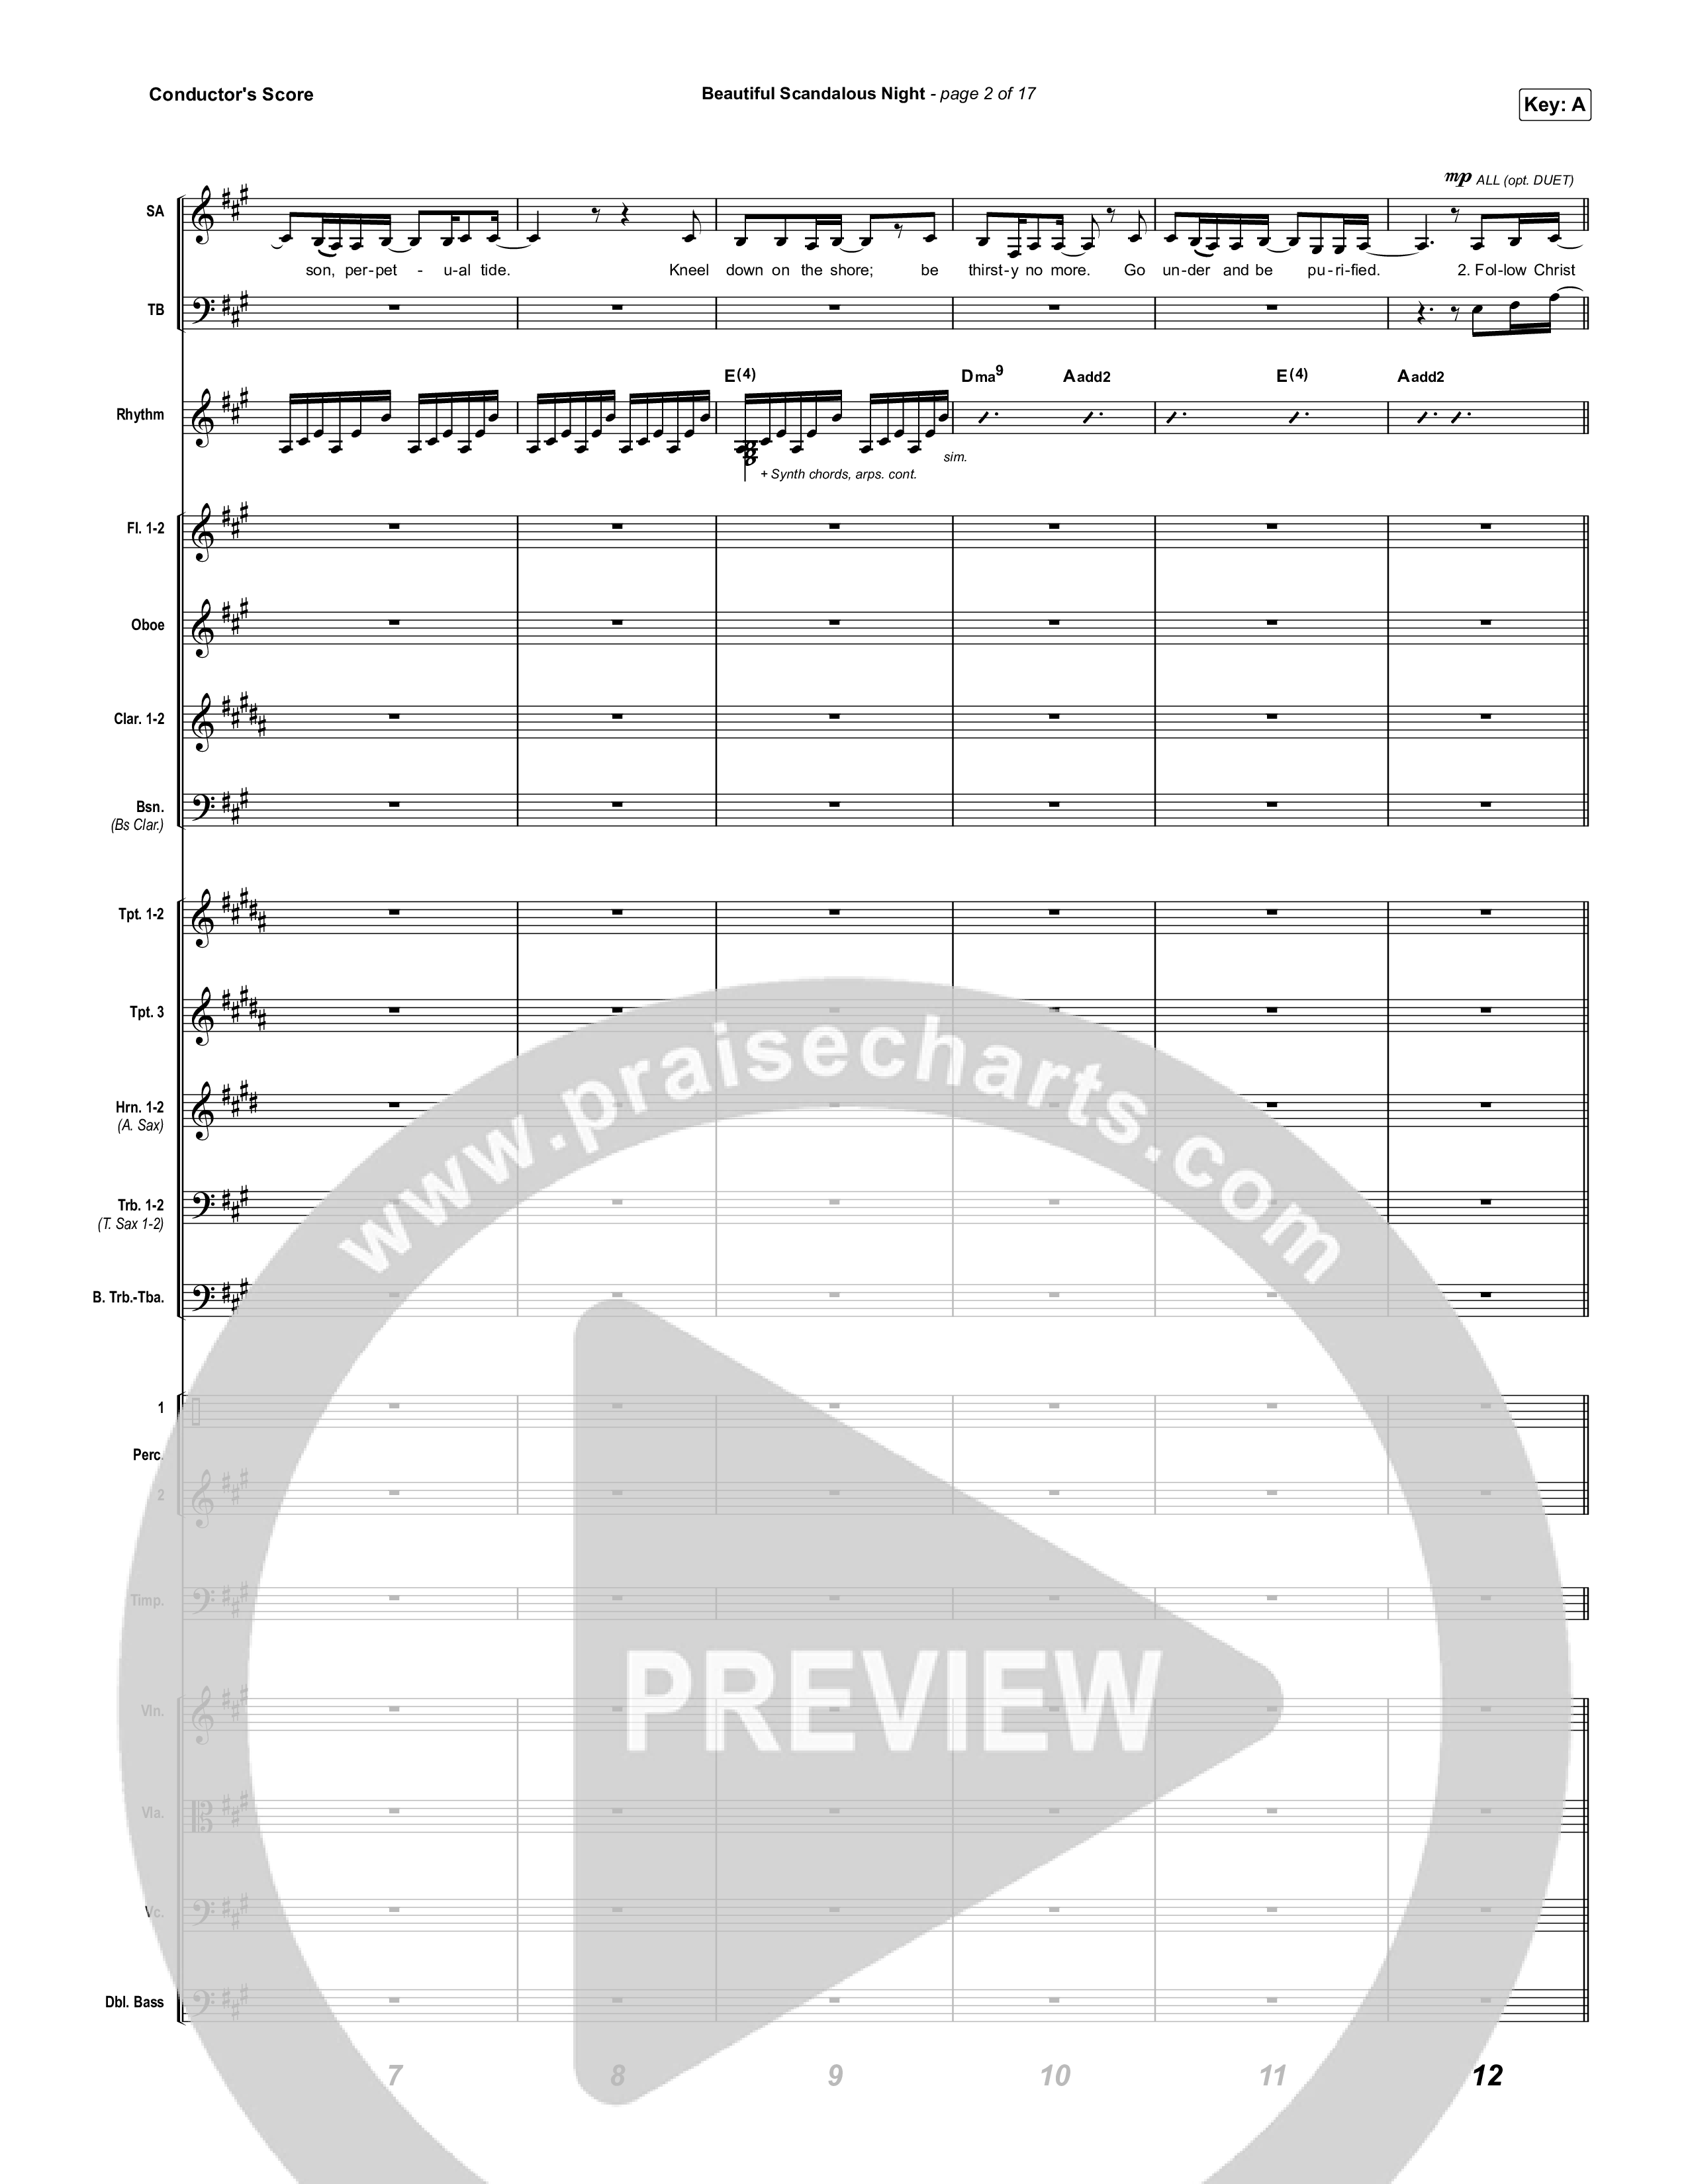 Beautiful Scandalous Night Conductor's Score (Shane & Shane / The Worship Initiative)